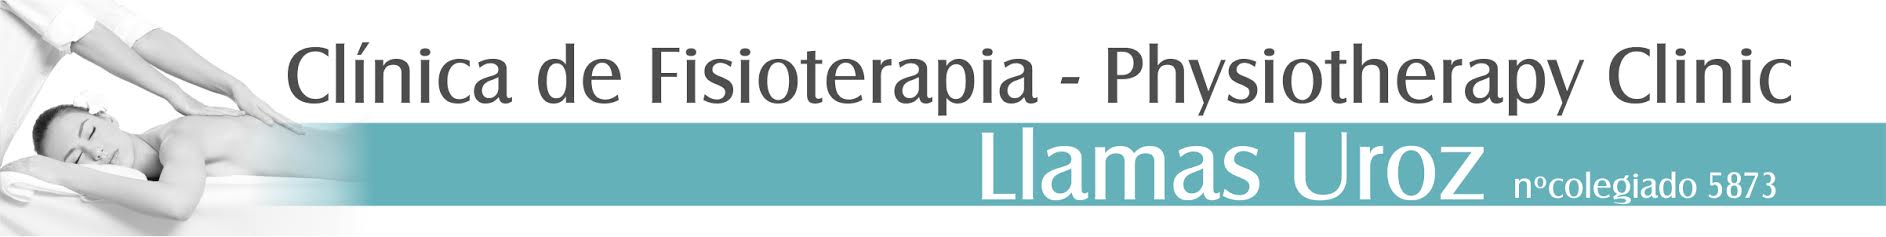 Logotipo de la clínica CLINICA FISIOTERPIA LLAMAS UROZ